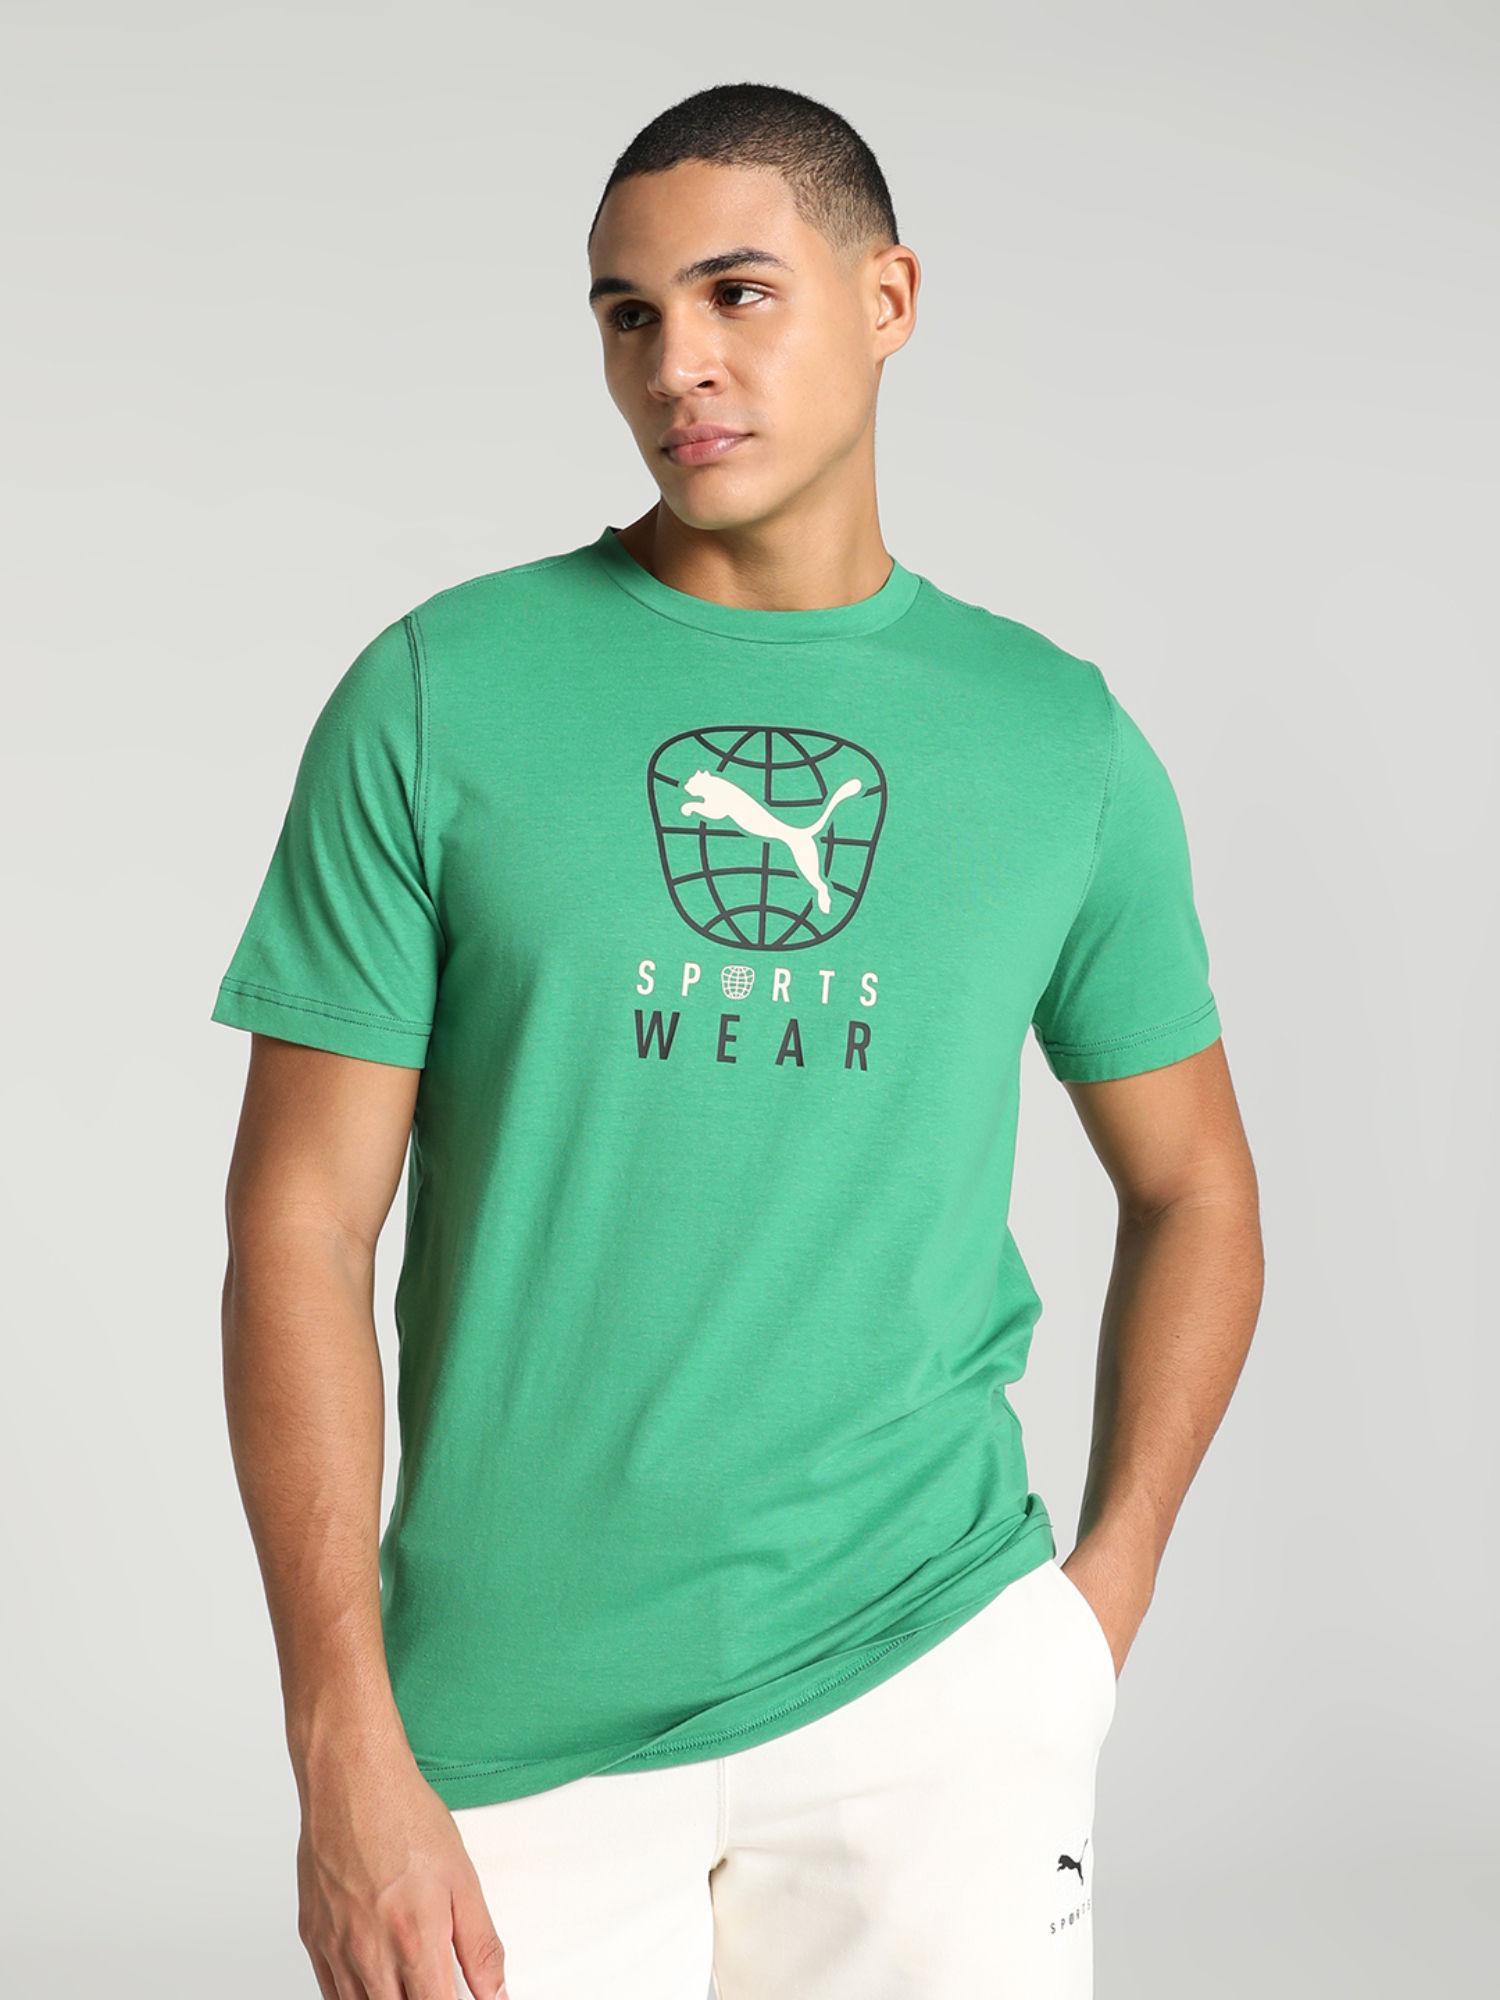 better-sportswear-mens-green-t-shirt